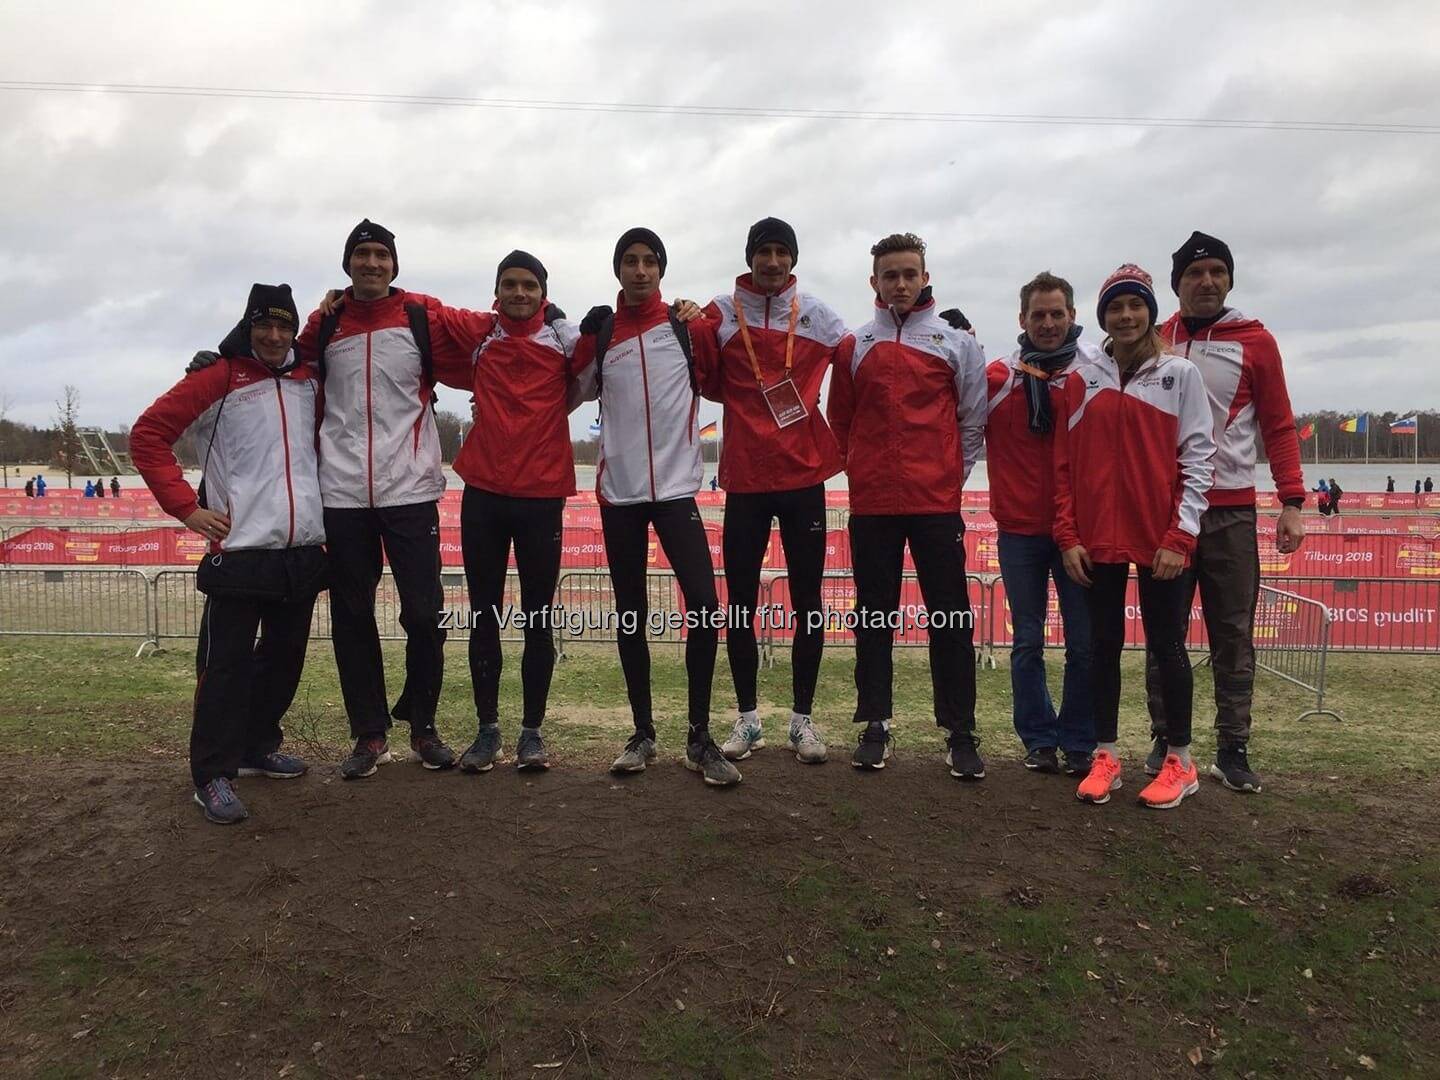 Team von Austrian Athletics